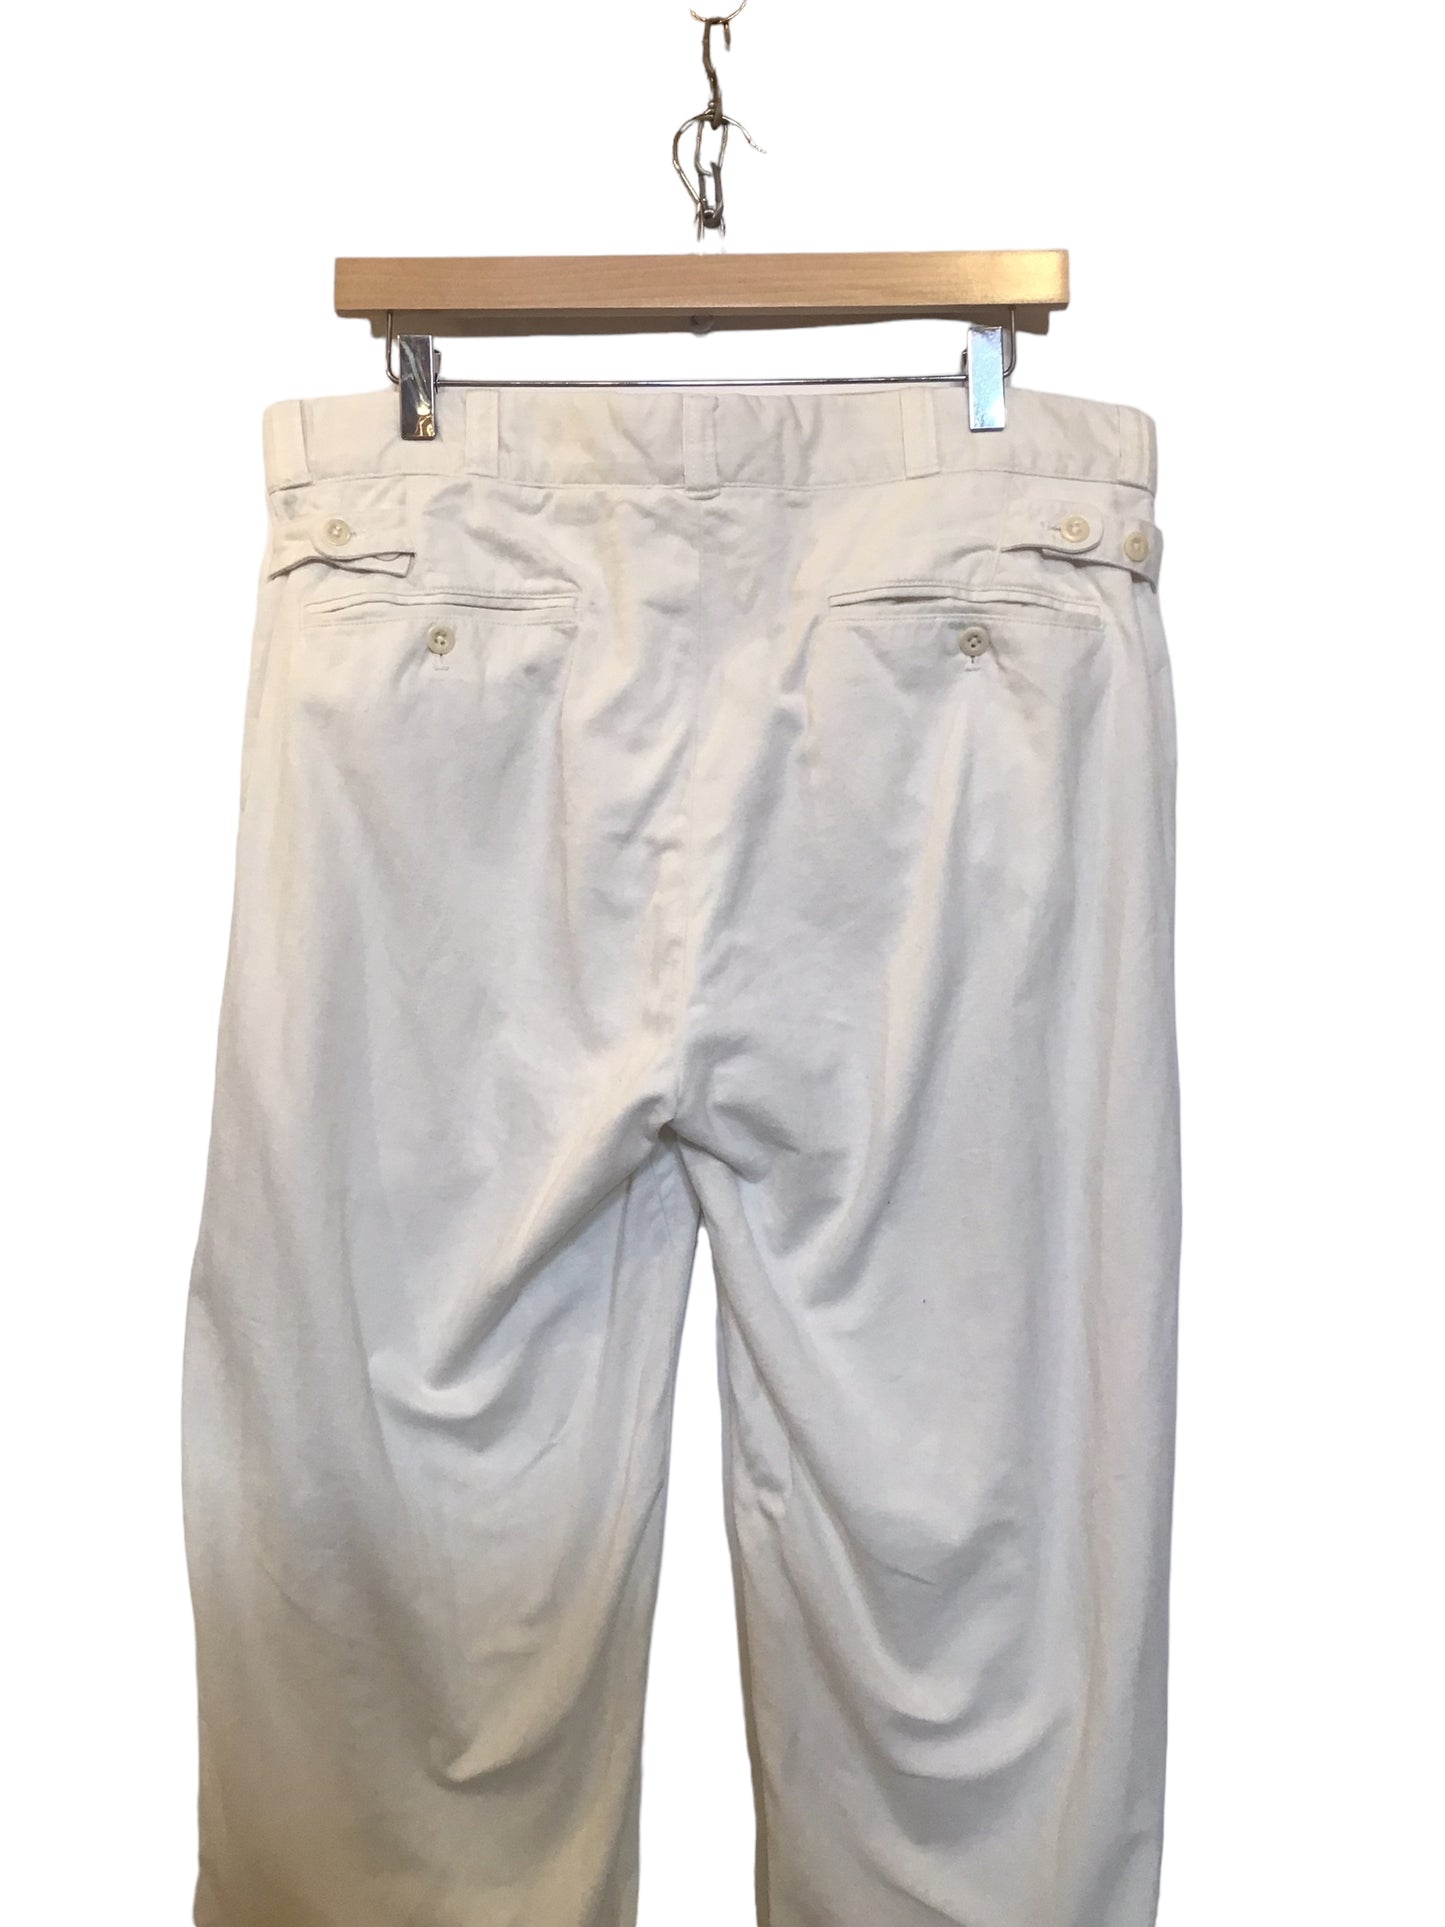 White Cotton Trousers (Size XL)